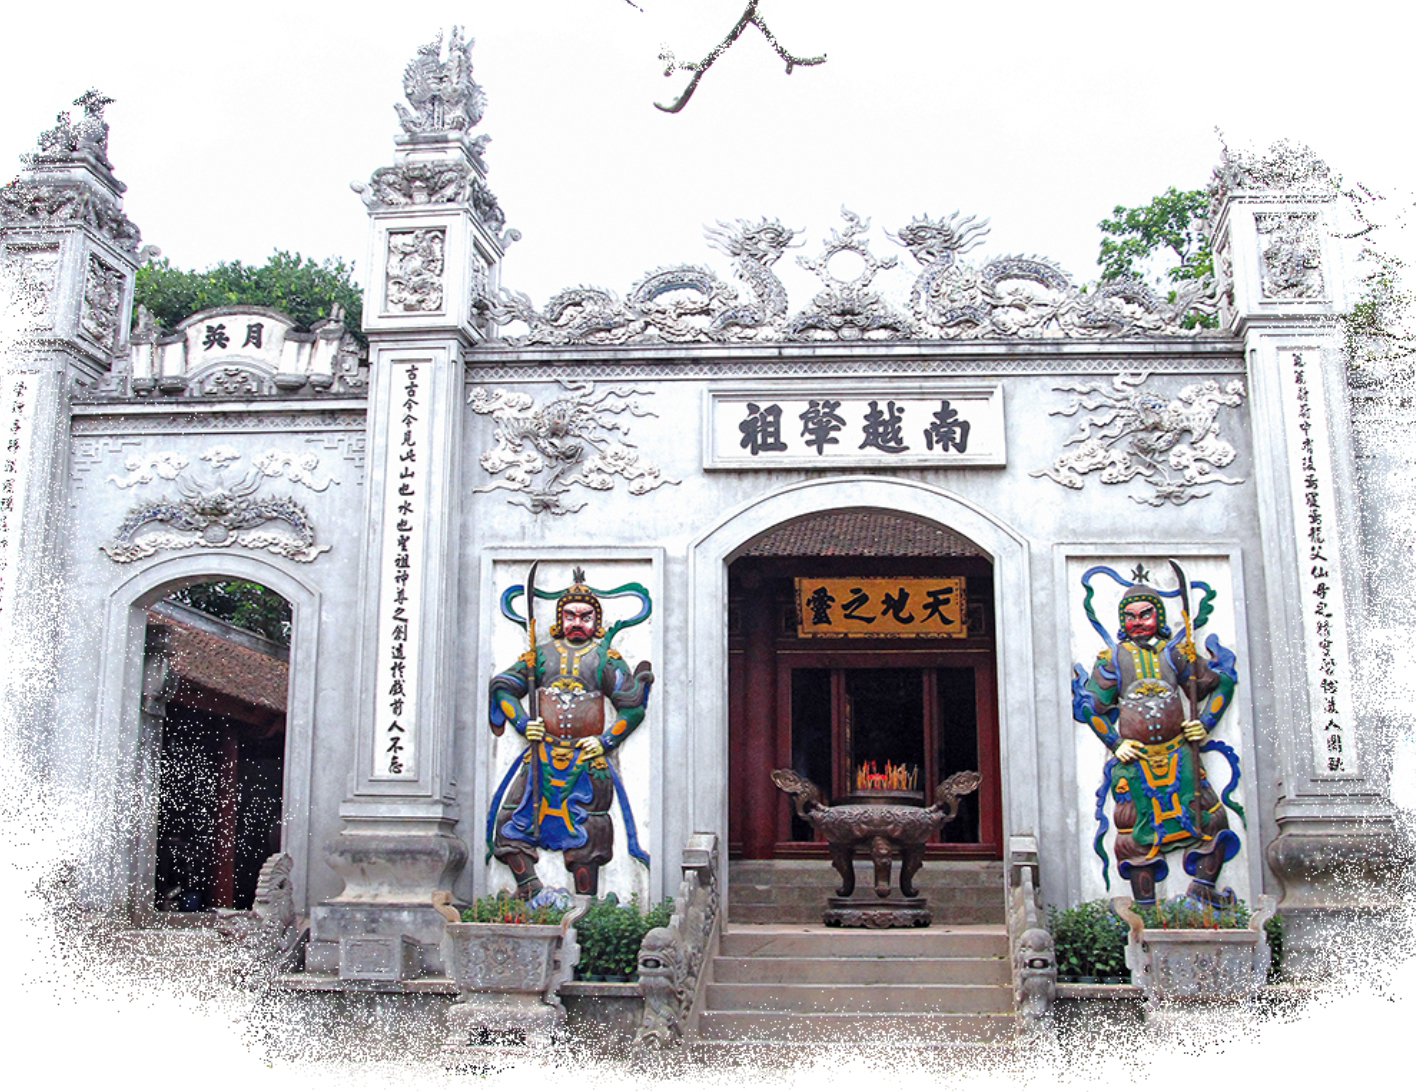 Tranh tập đọc Phong cảnh đền Hùng  Tiếng Việt  Phạm Đức Hào  Website của  Trường Tiểu học Trực Tuấn